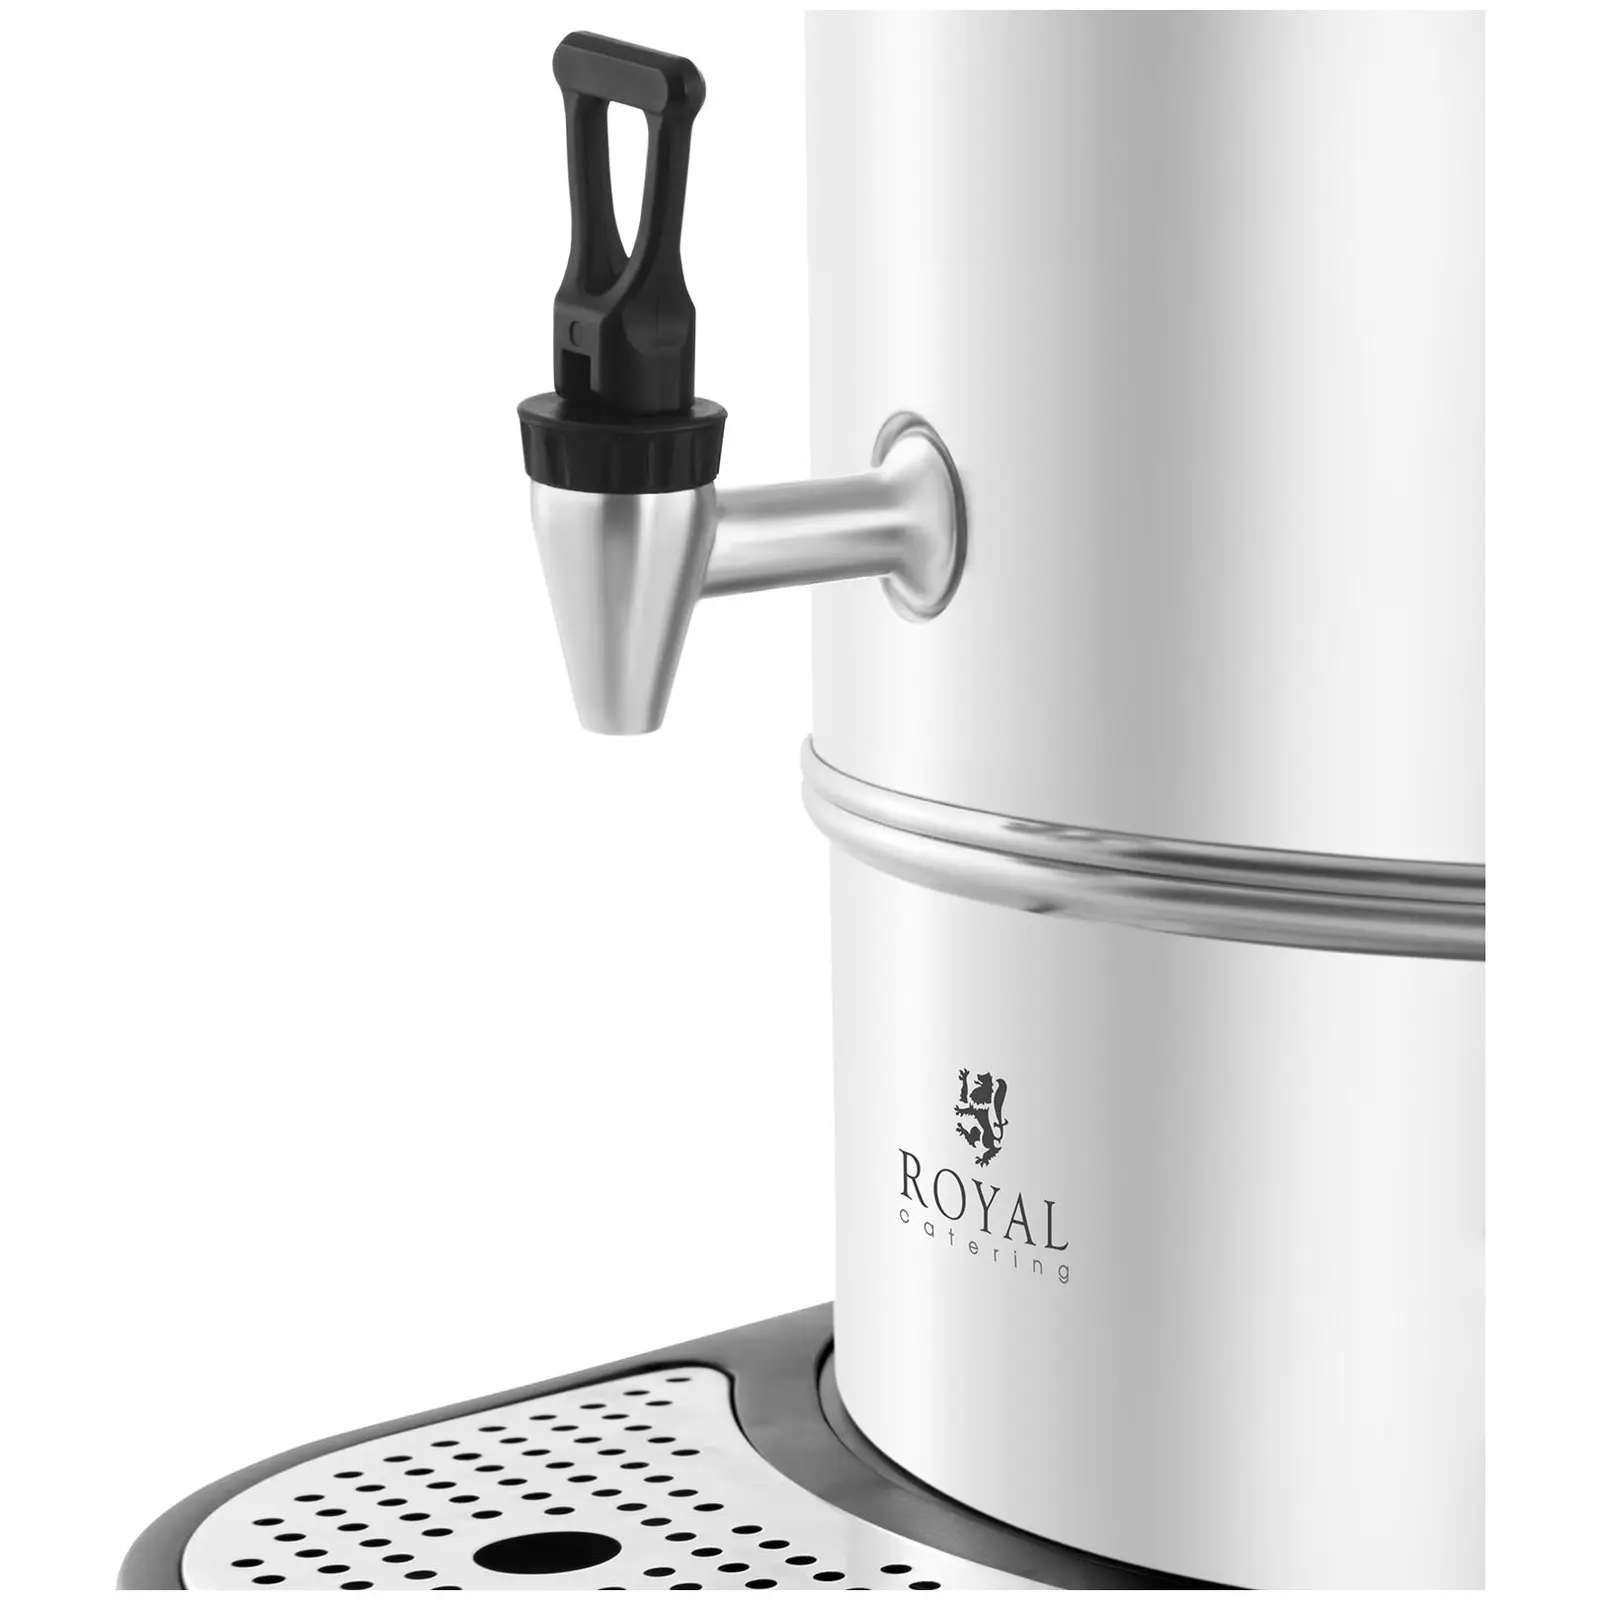 Hot Water Dispenser - 16 litres